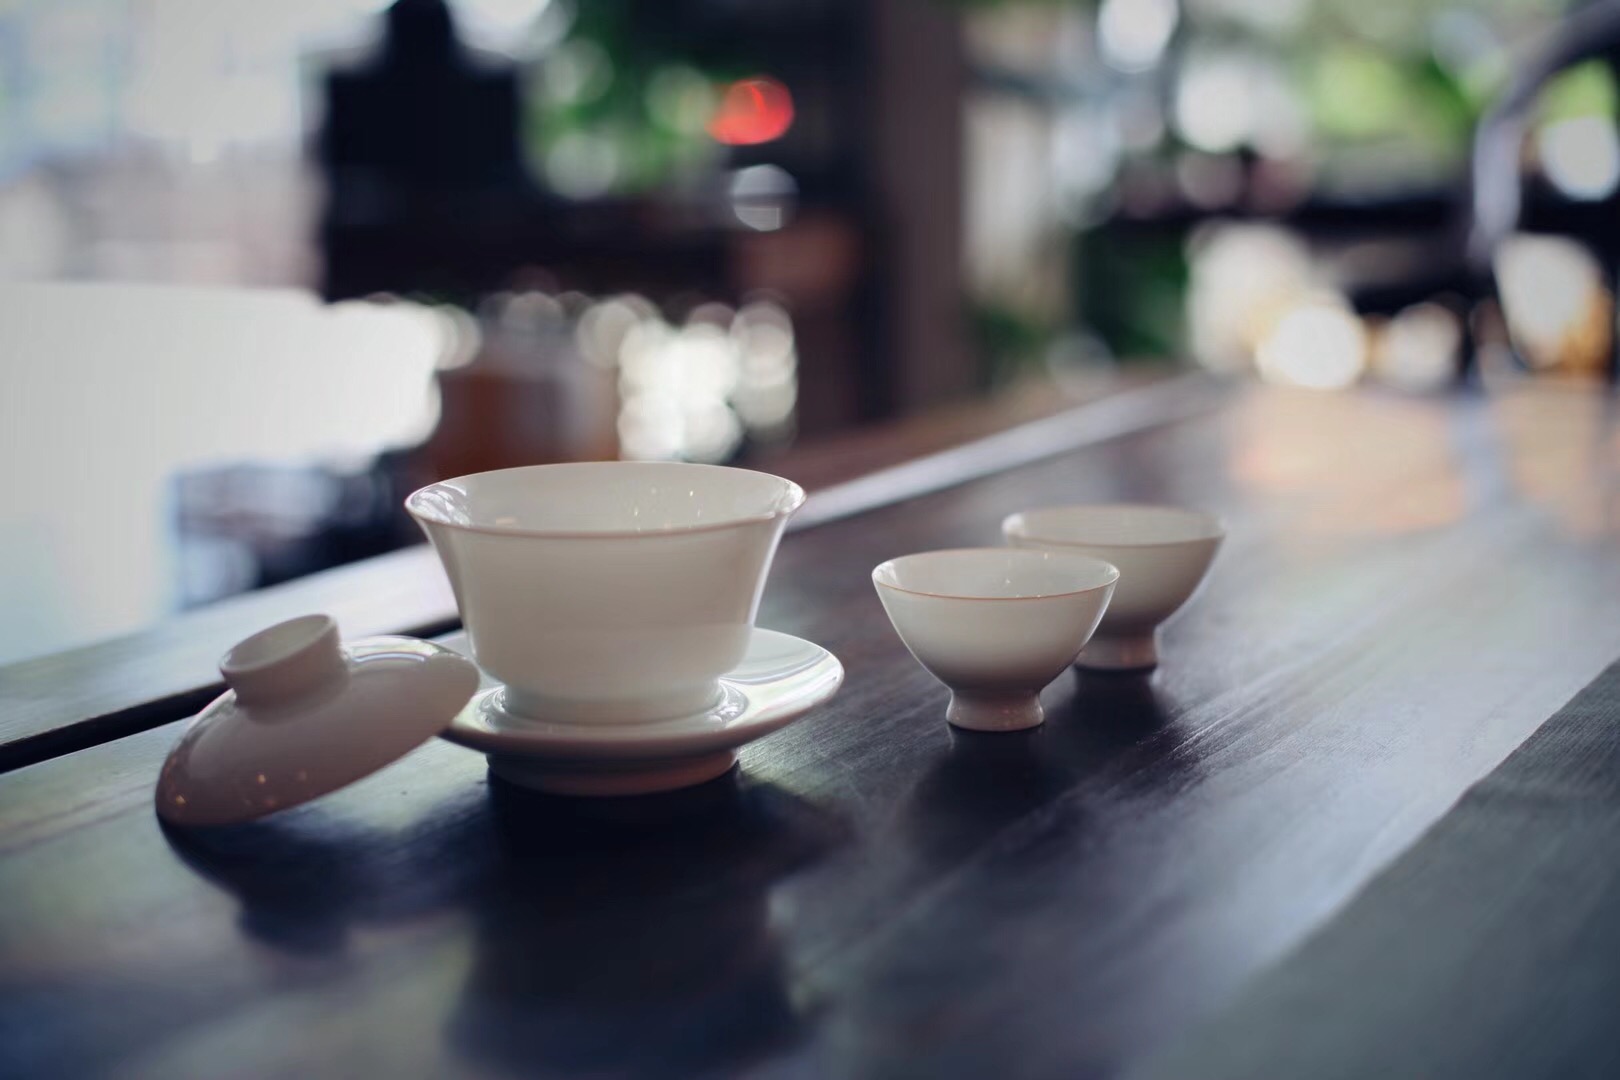 Jingdezhen porcelain gaiwan and cups